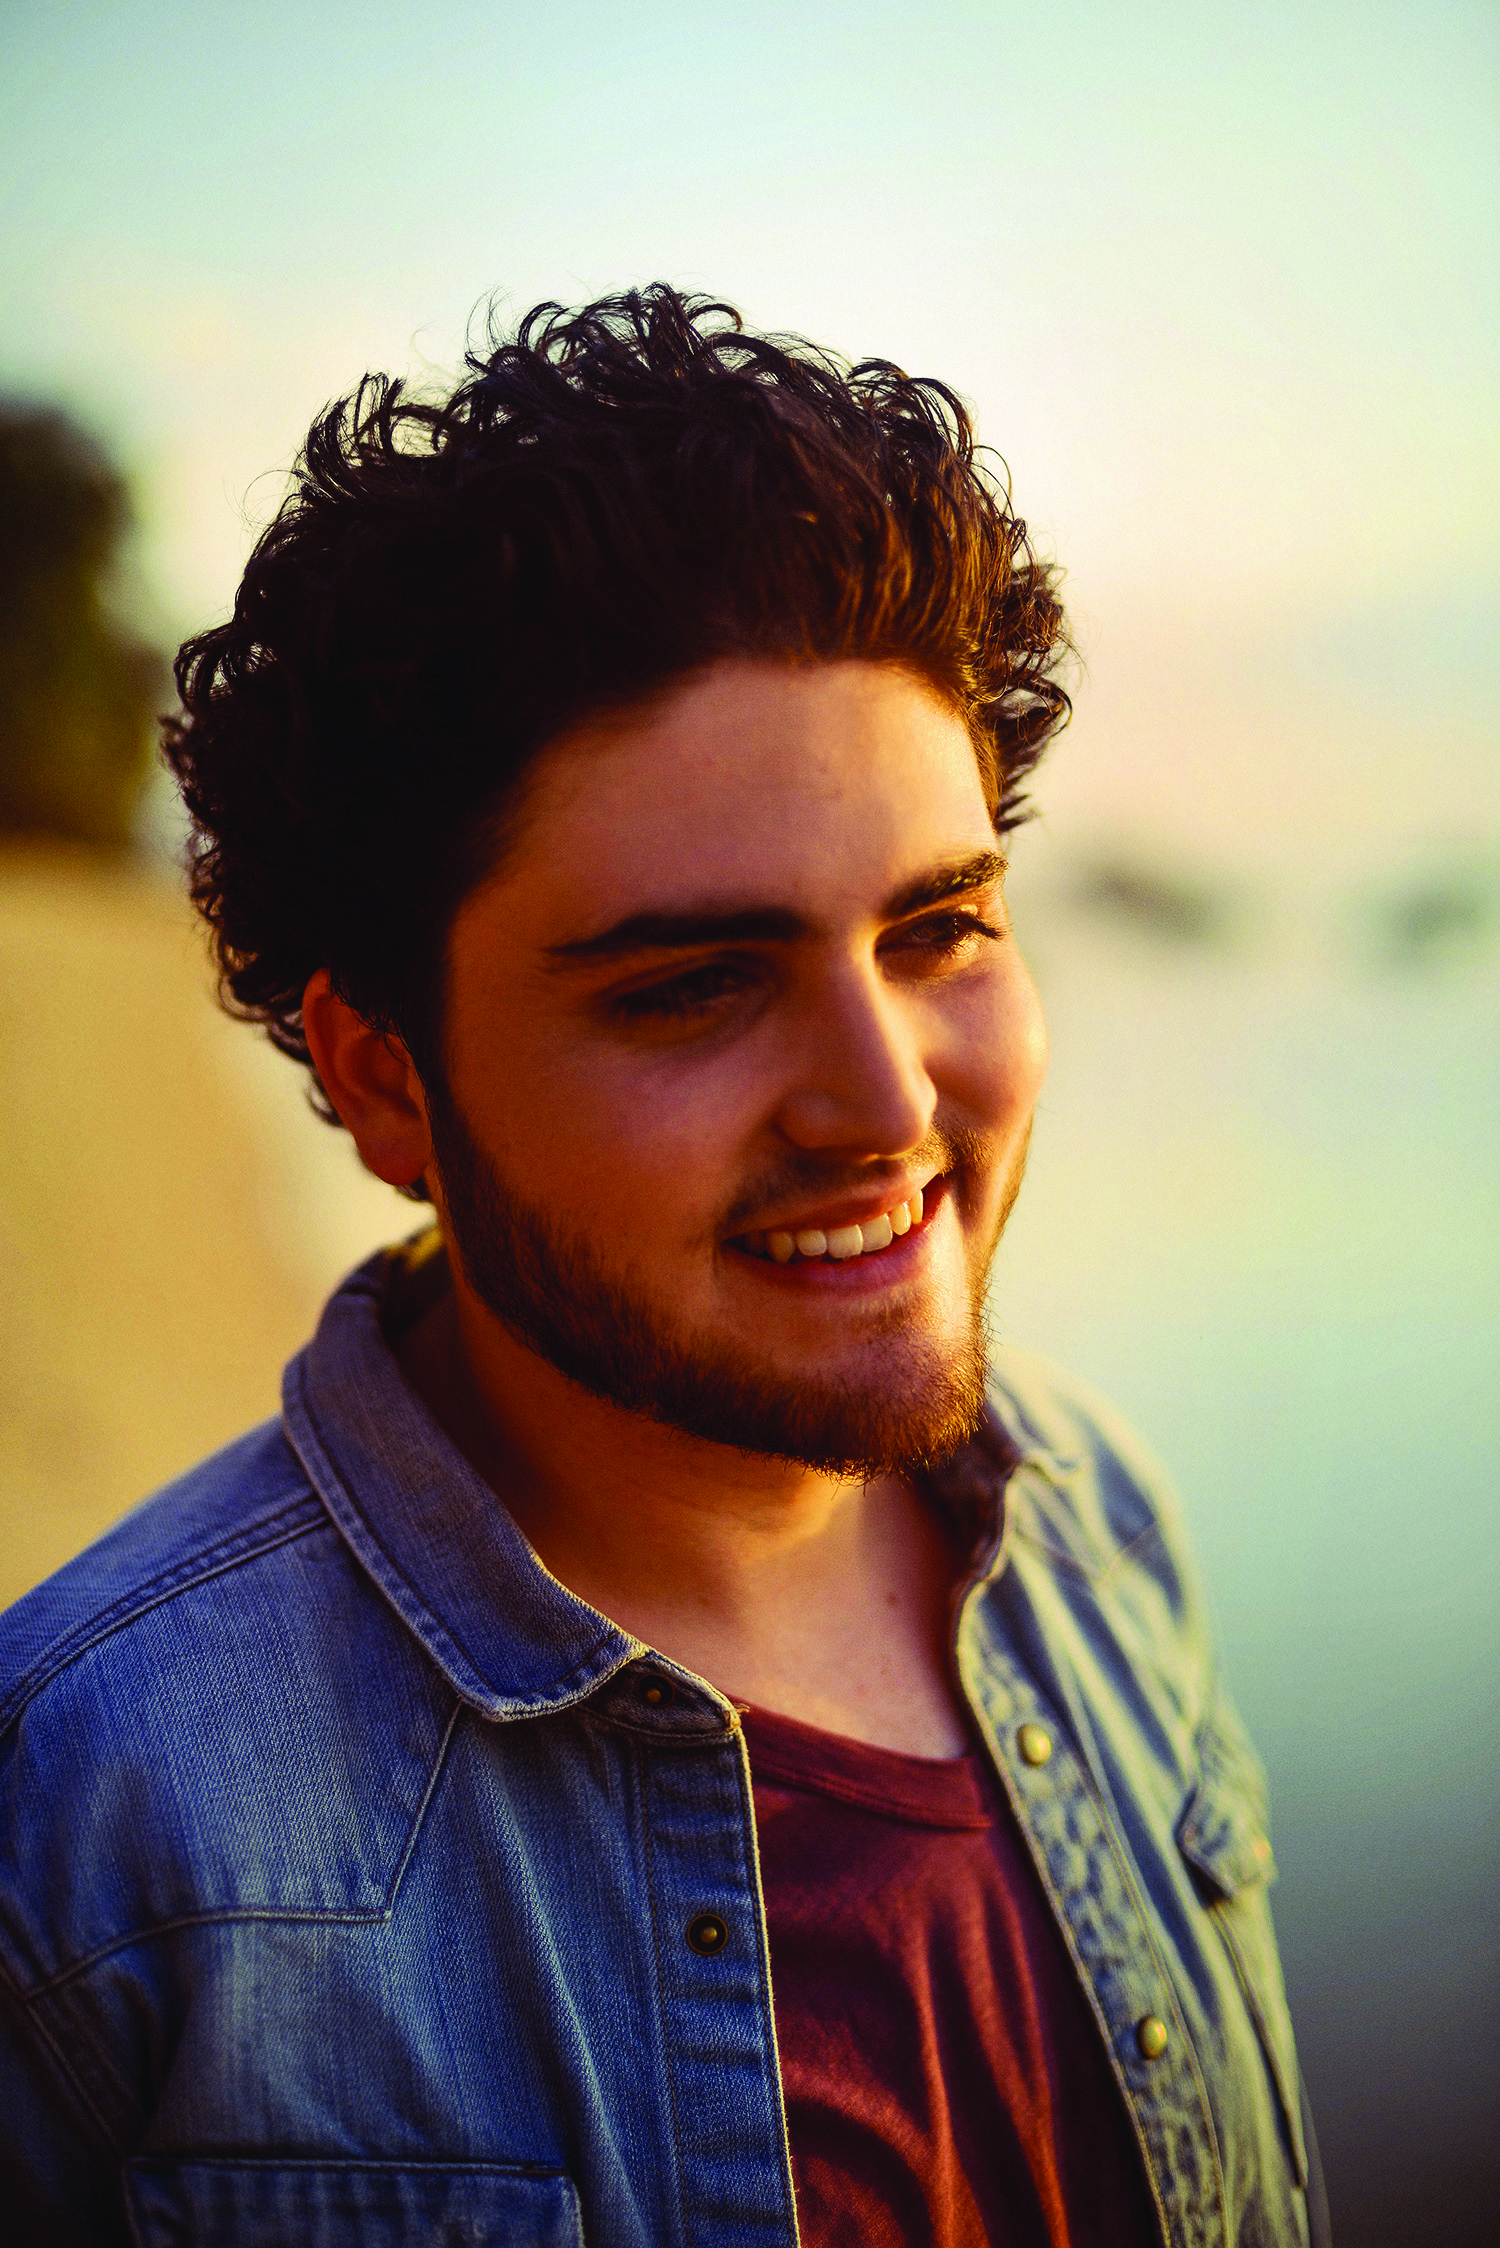 Jeune chanteur périgourdin de 22 ans, Thibault Gaudillat dit TIBZ est l’auteur du 1er single "On n’est pas bien là ?", hymne fédérateur sorti en 2015